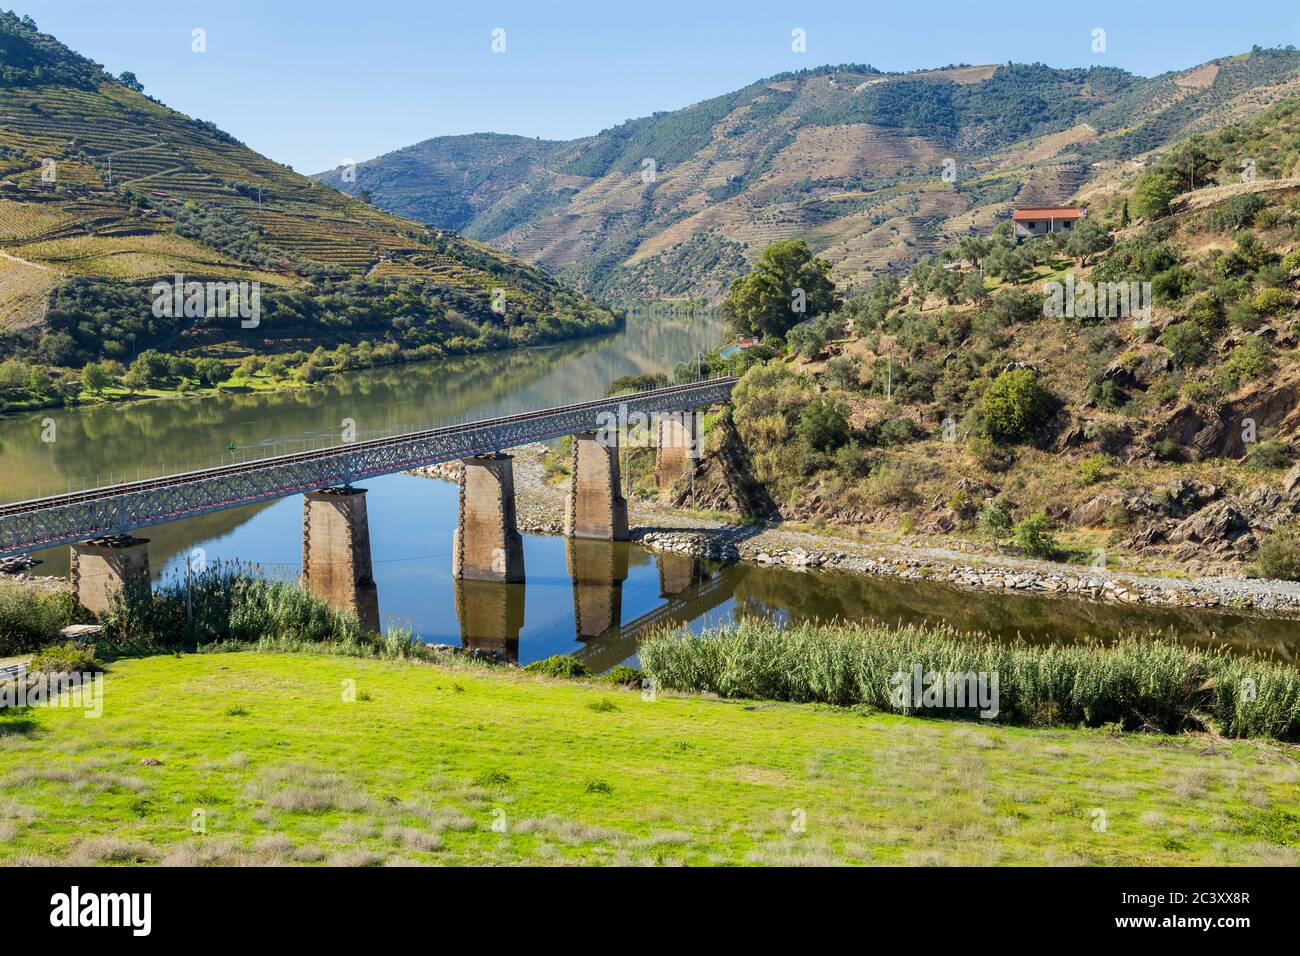 Landschaftlich reizvolle Aussicht auf das Douro-Tal und den Fluss mit terrassenförmig angelegten Weinbergen in der Nähe des Dorfes Tua, Portugal Stockfoto